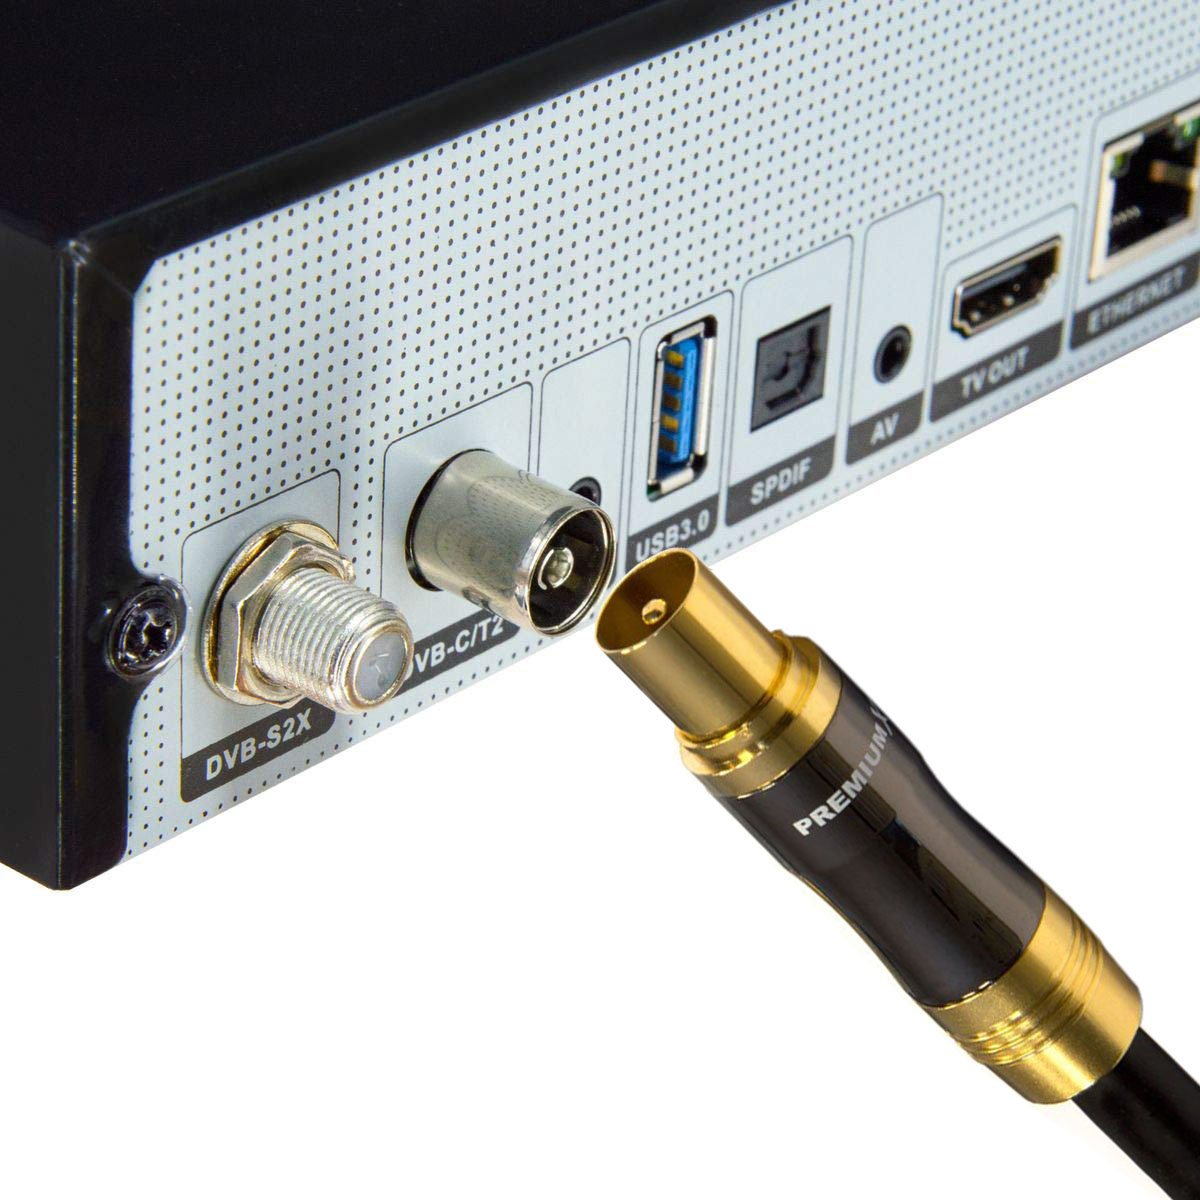 PREMIUMX 25m Gold-Line - TV 4K Schwarz Kupplung Stecker Koax HDTV Antennenkabel Antennenkabel IEC-Anschlusskabel